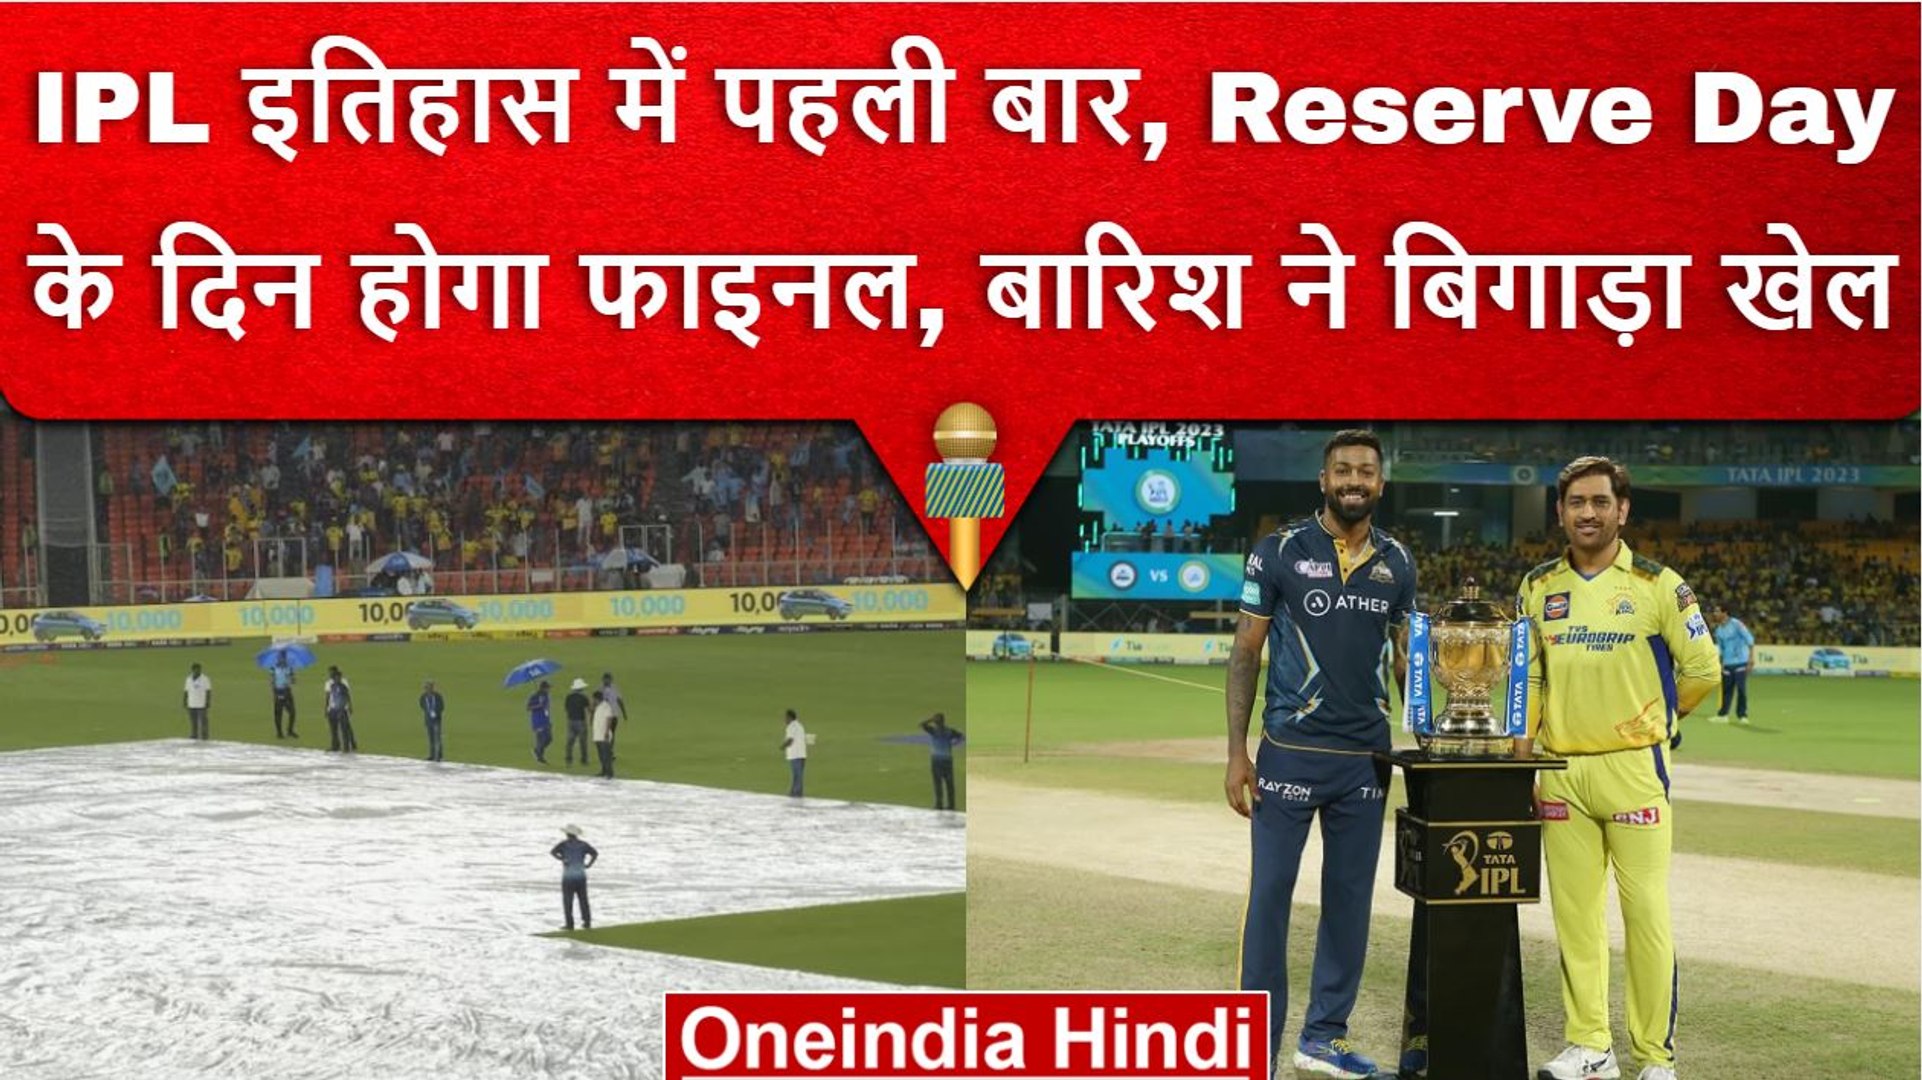 IPL 2023 Reserve Day के दिन खेला जाएगा IPL Final, इतिहास में पहली बार होगा ऐसा वनइंडिया हिंदी